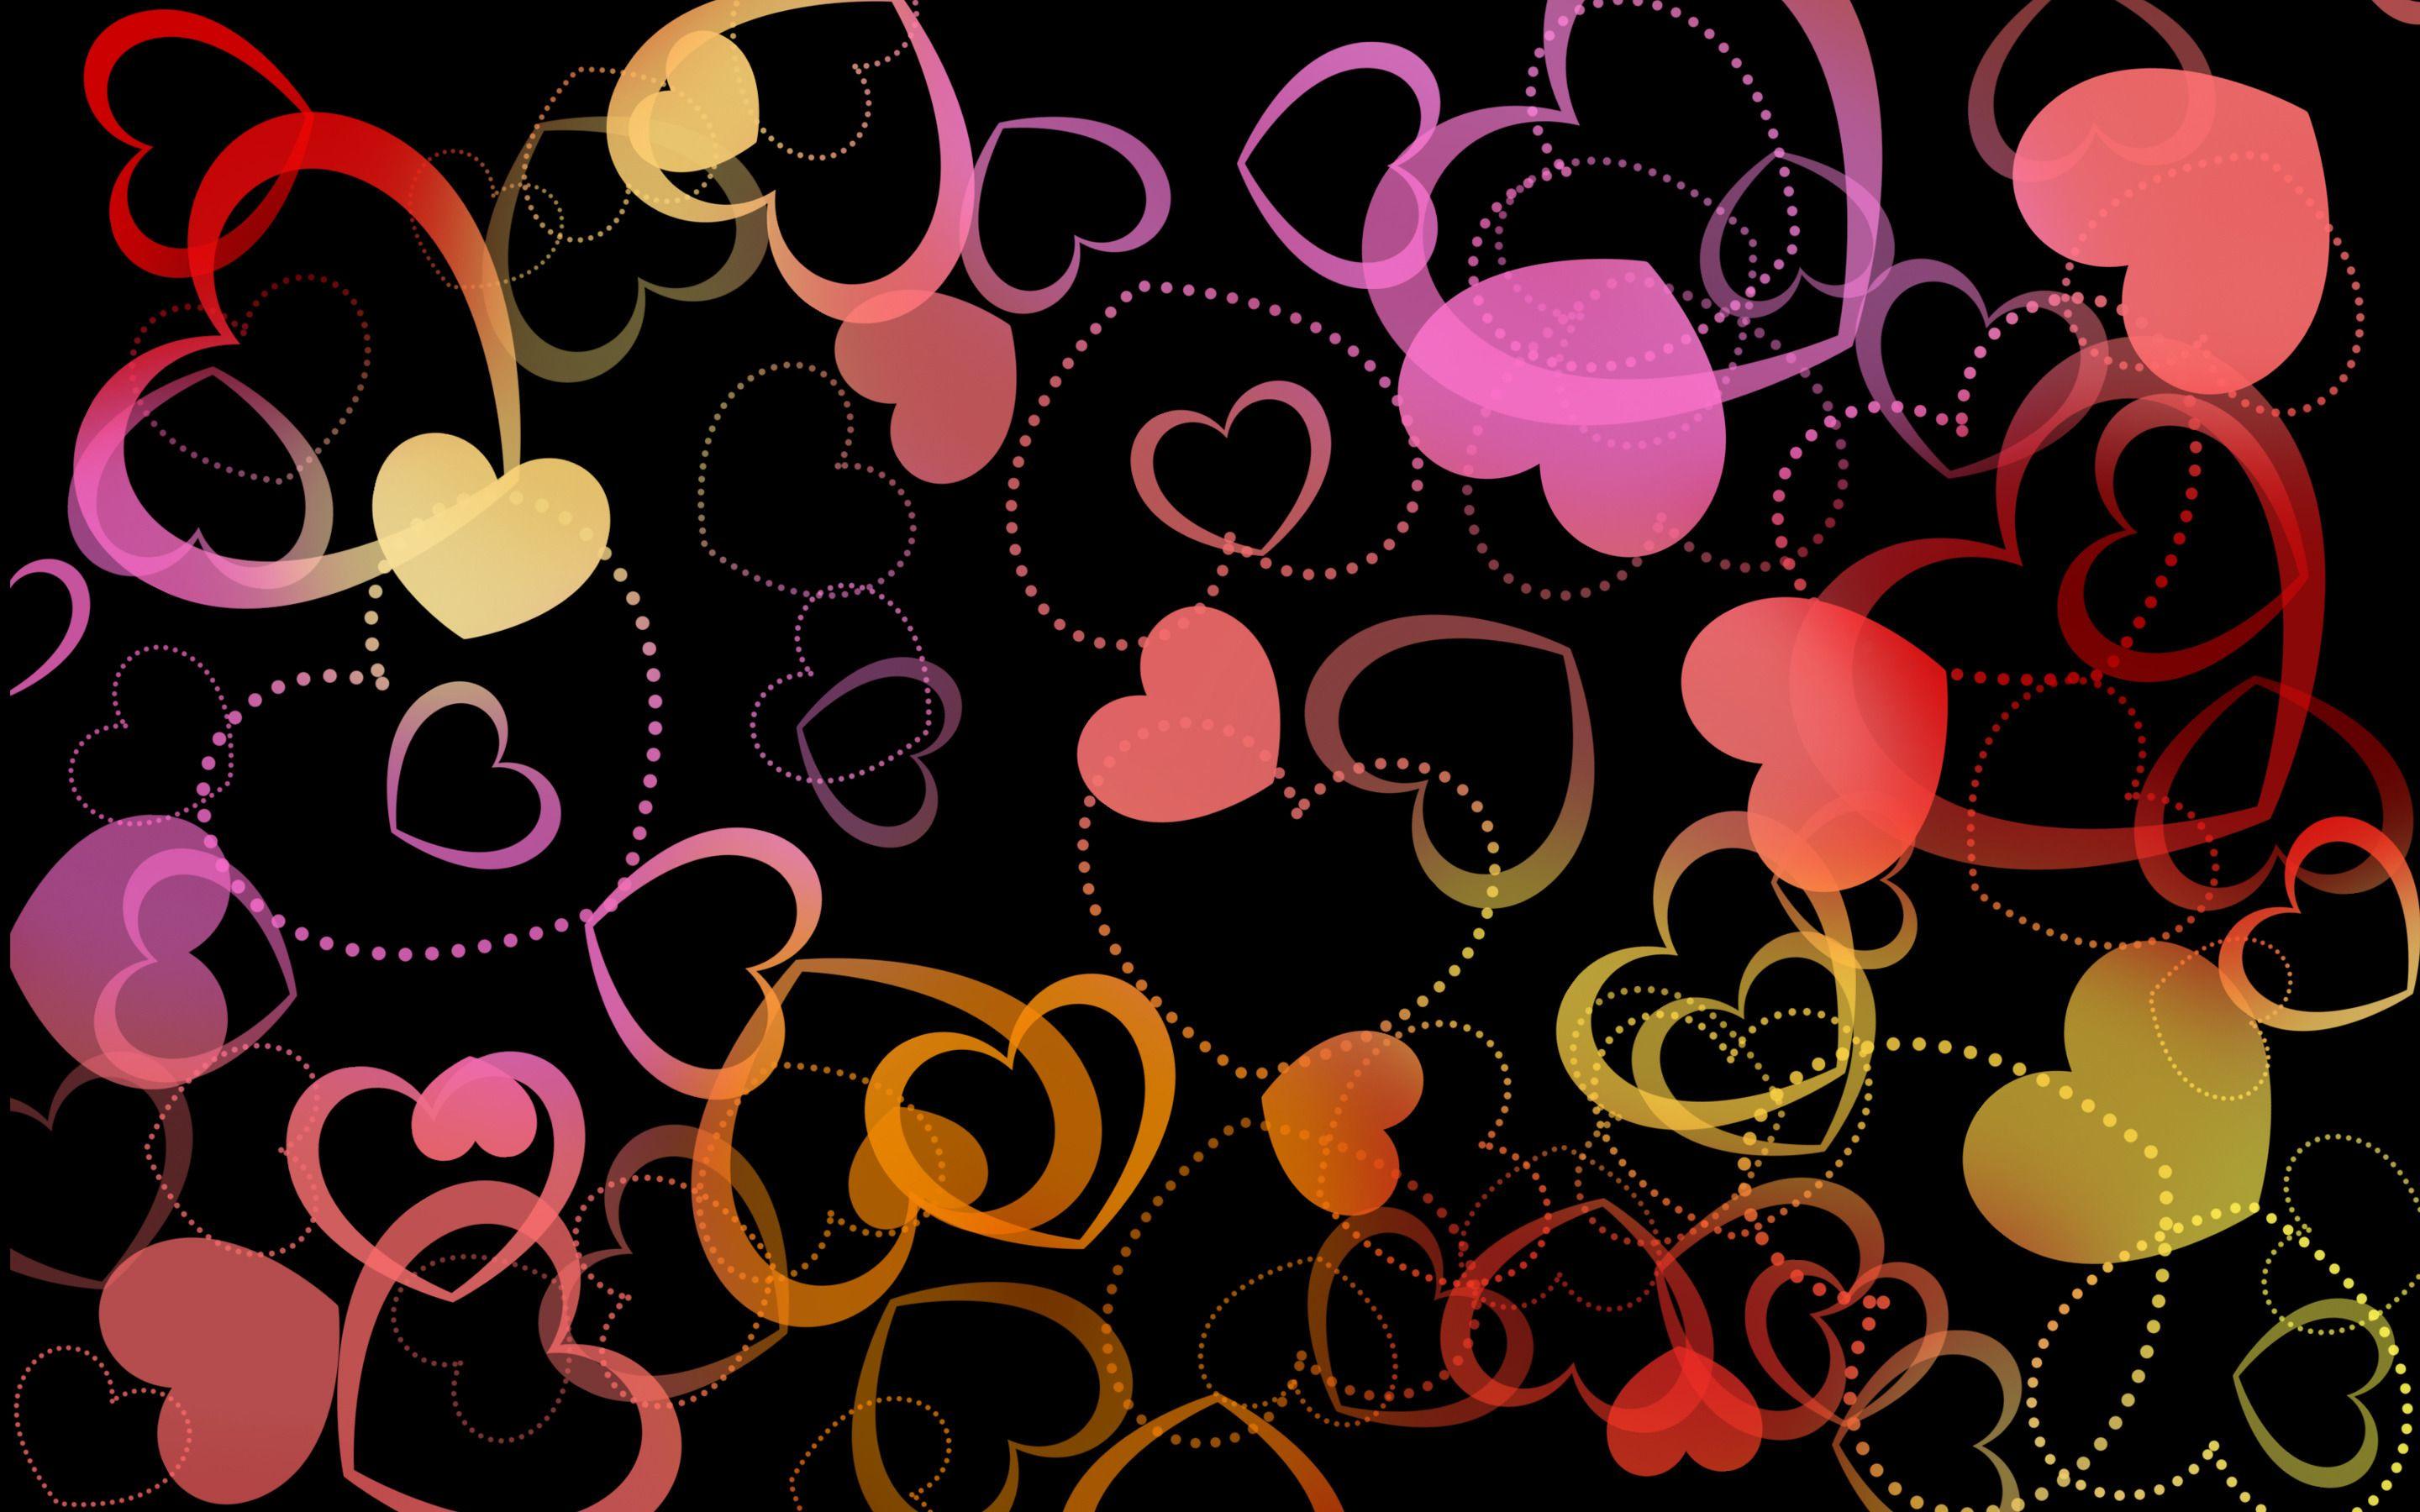 Colorful Hearts Holiday Hd Wallpaper. Hearts